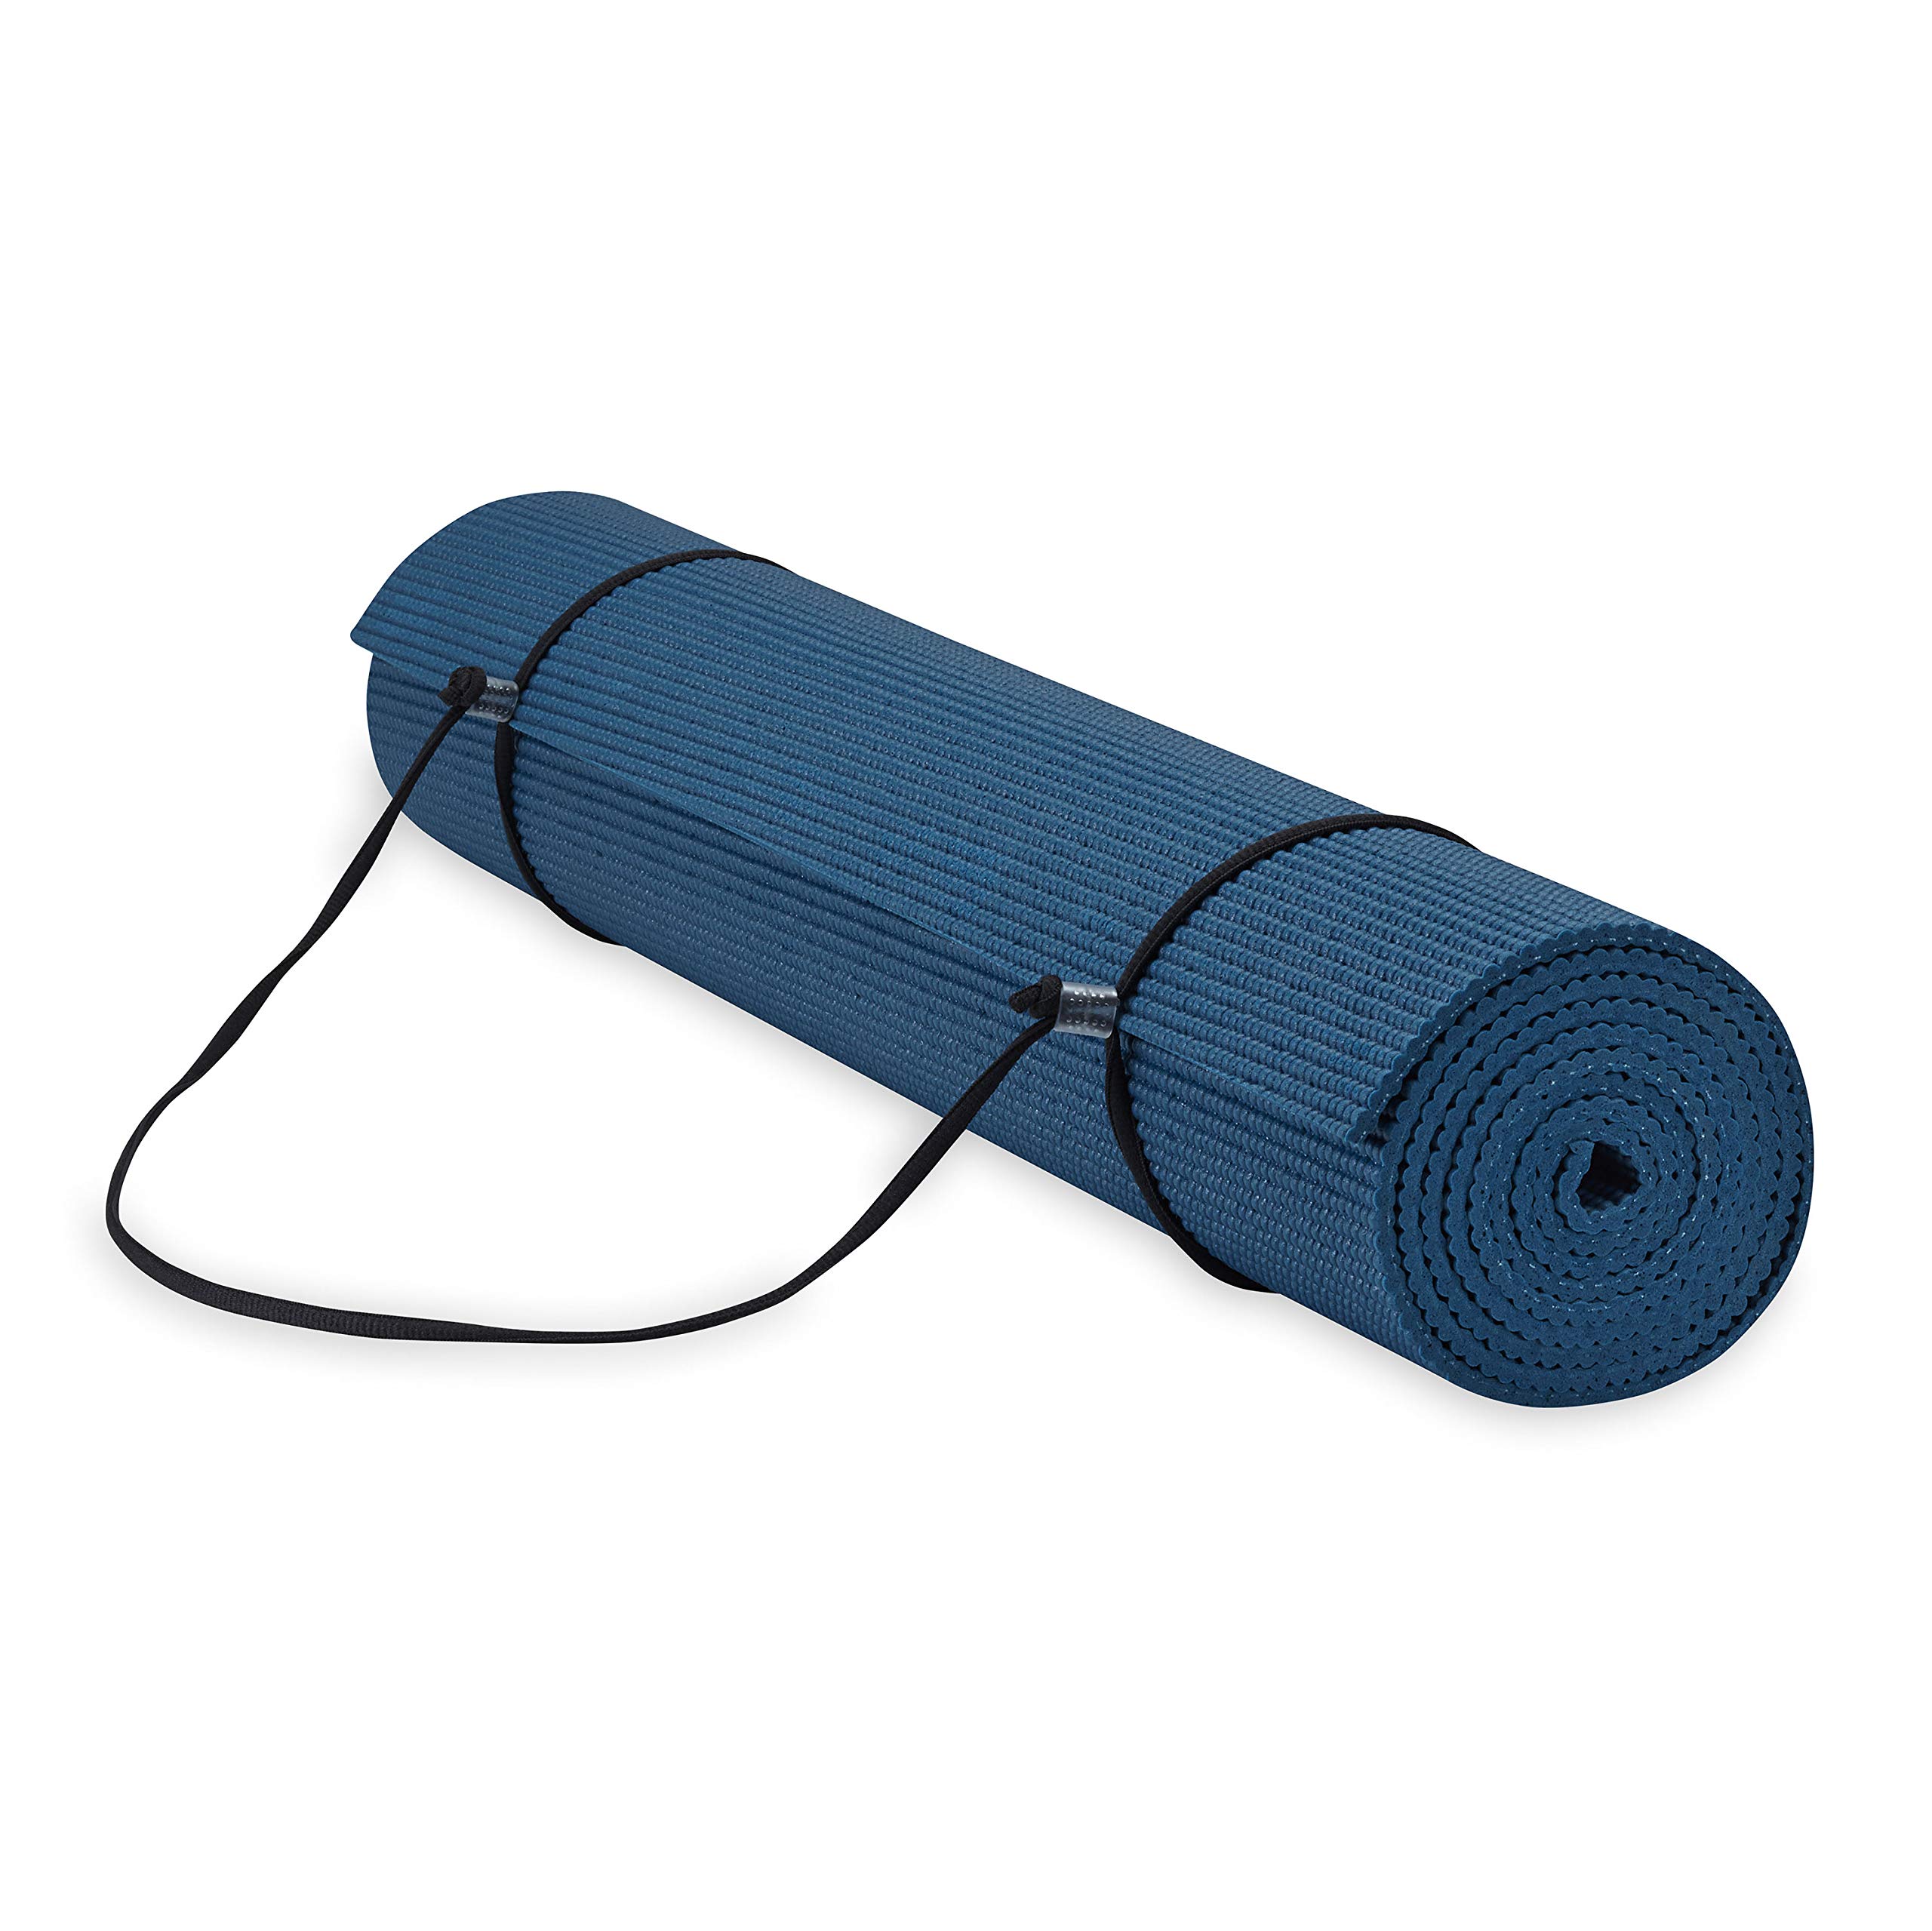 Gaiam Essentials Hochwertige Yogamatte mit Yogamatte, Tragetasche, Marineblau, 183 cm L x 61 cm B x 0,6 cm dick, navy